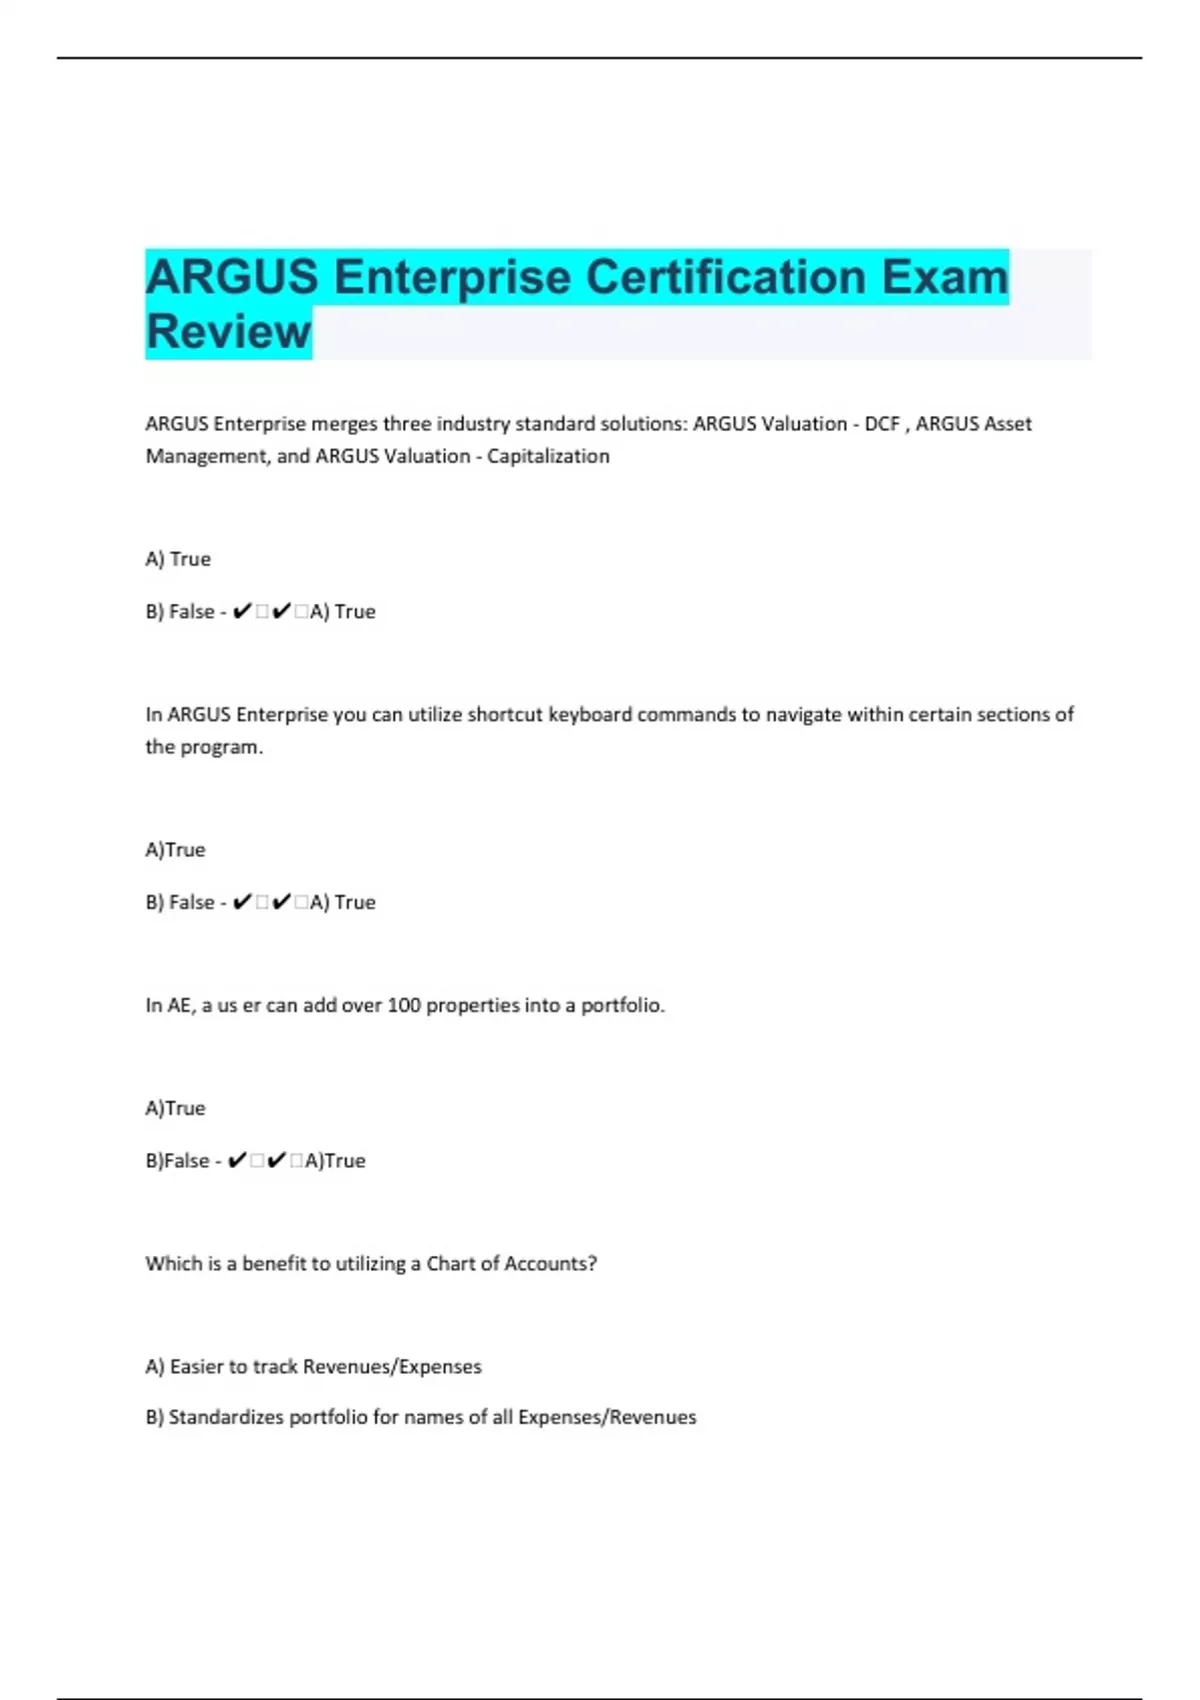 ARGUS Enterprise Certification Exam Review Questions Argus